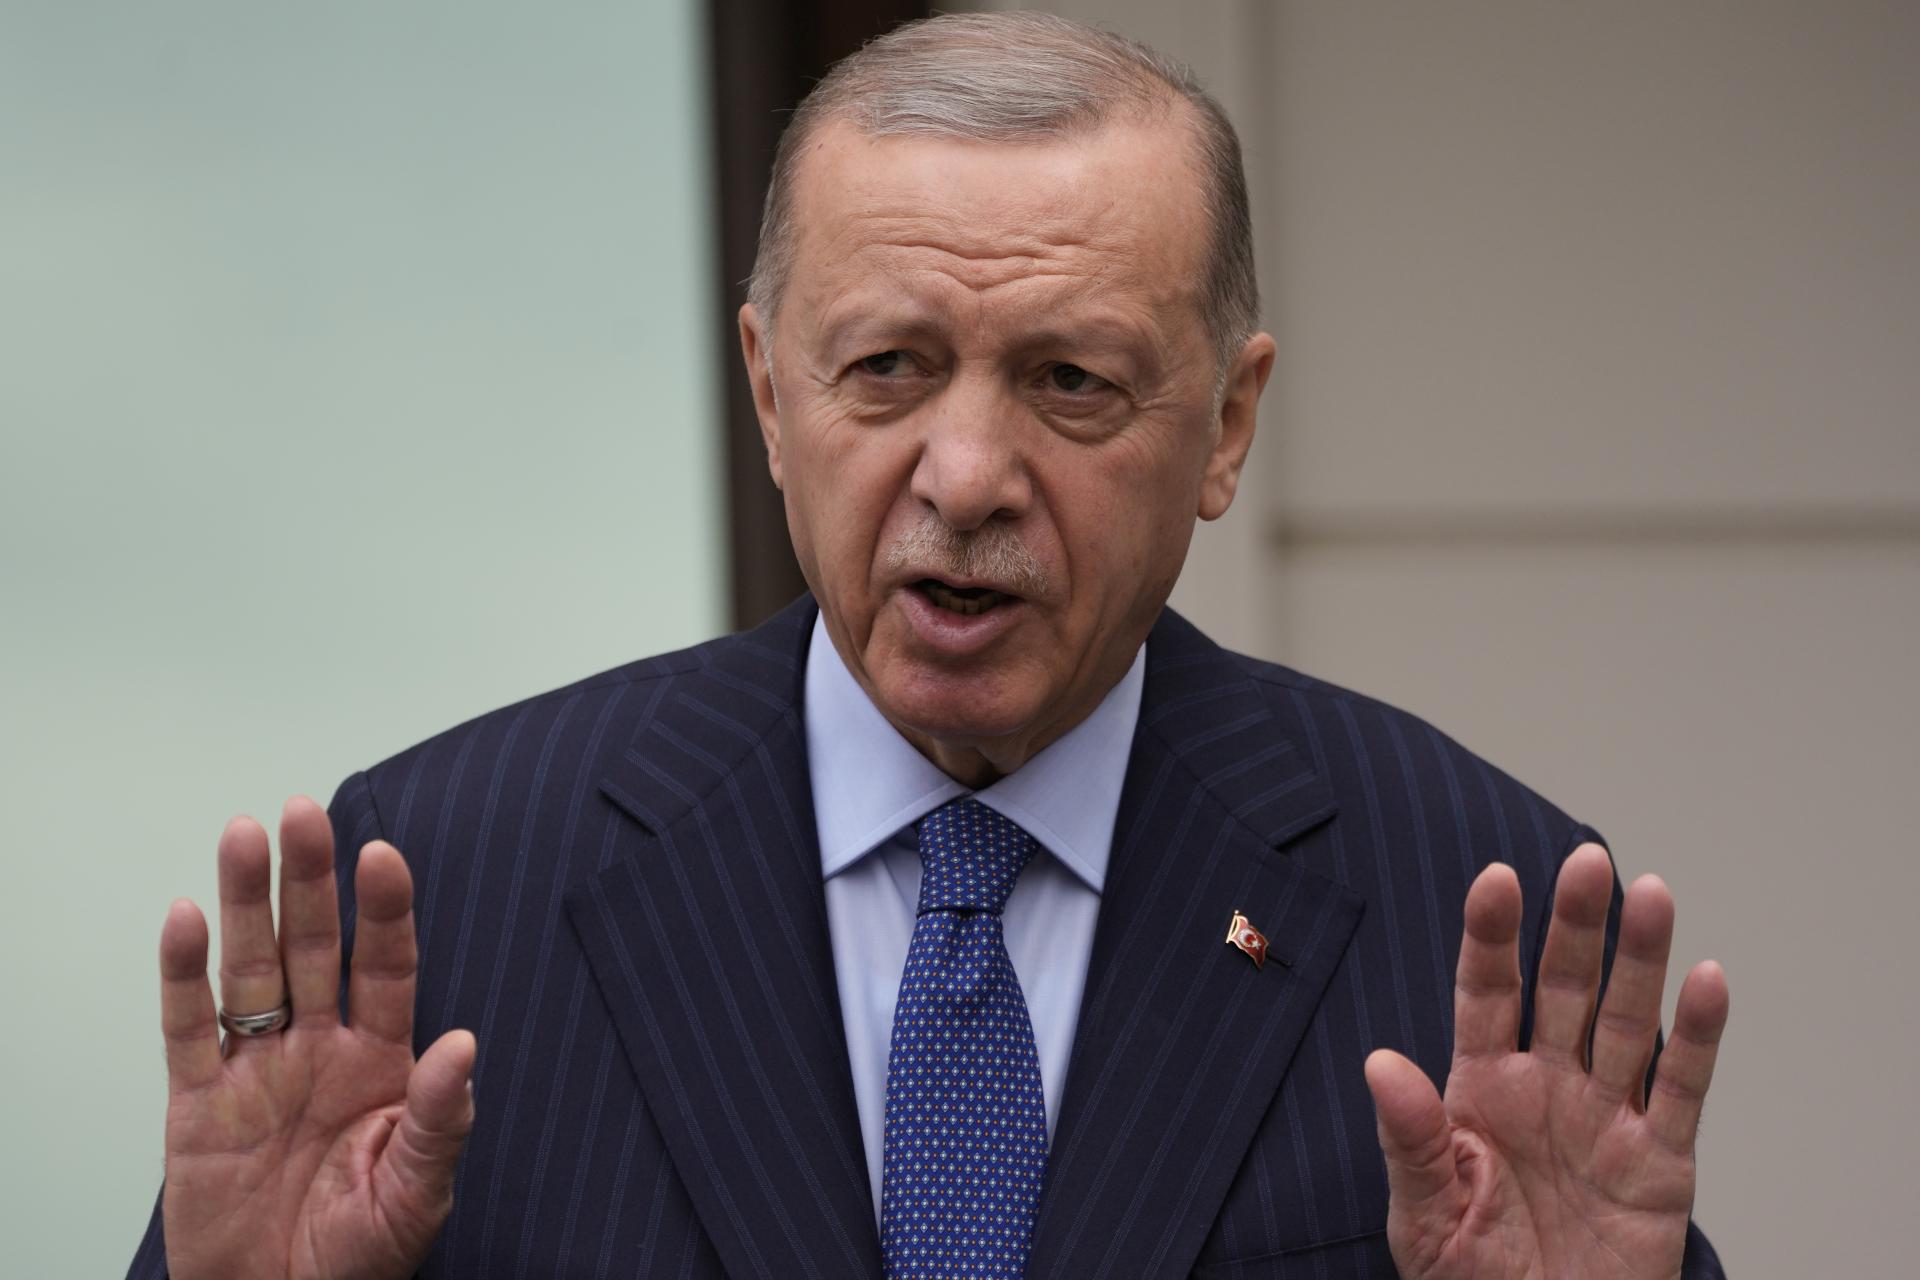 Erdogana znepokojuje vývoj na Blízkom východe: Ak Izrael porazí Hamas, skôr či neskôr sa zameria na Turecko